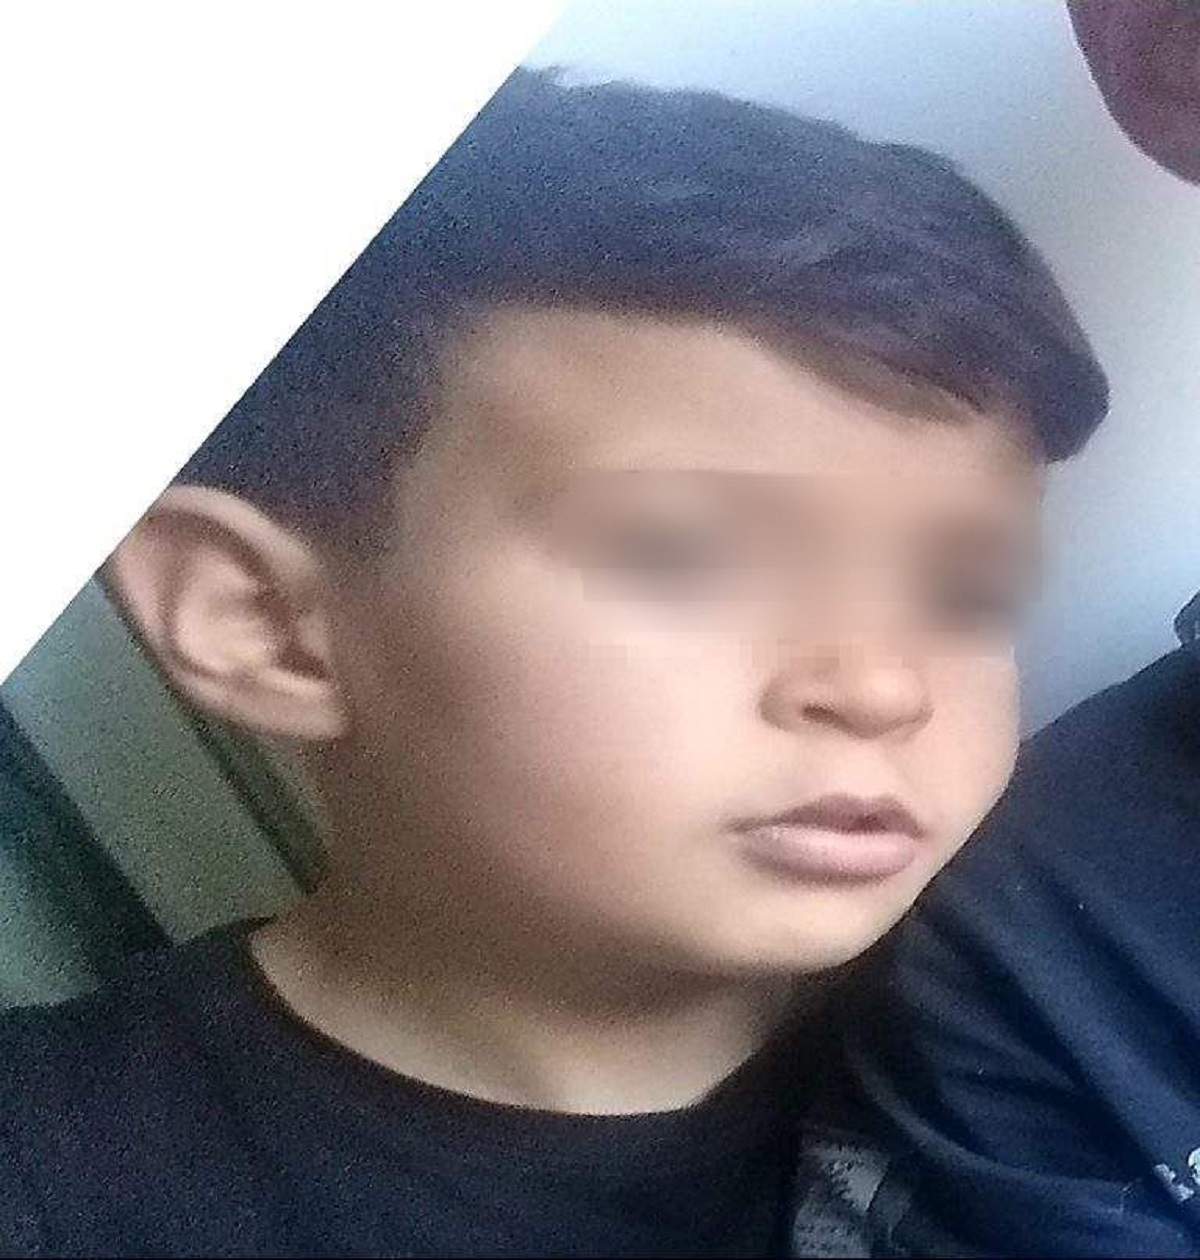 Tragedie în Vrancea. Marius, un băiat de 9 ani, a fost ucis cu sânge rece și aruncat în lac. Cine este criminalul